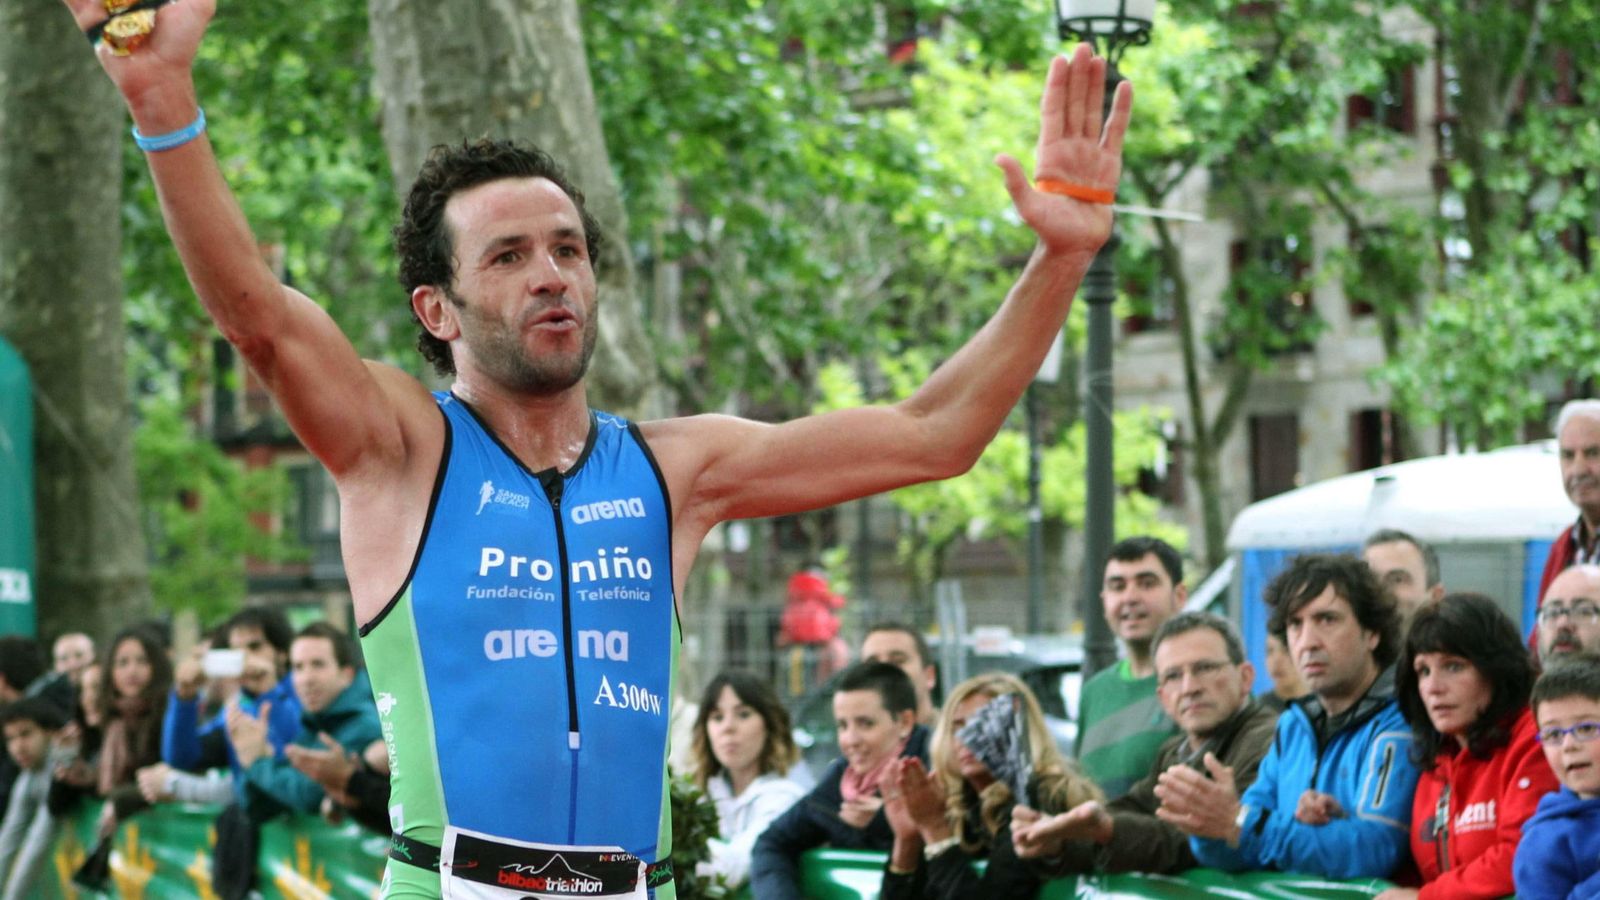 Foto: Alejandro Santamaría, un atleta superlativo, en la imagen tras ganar una prueba (EFE)